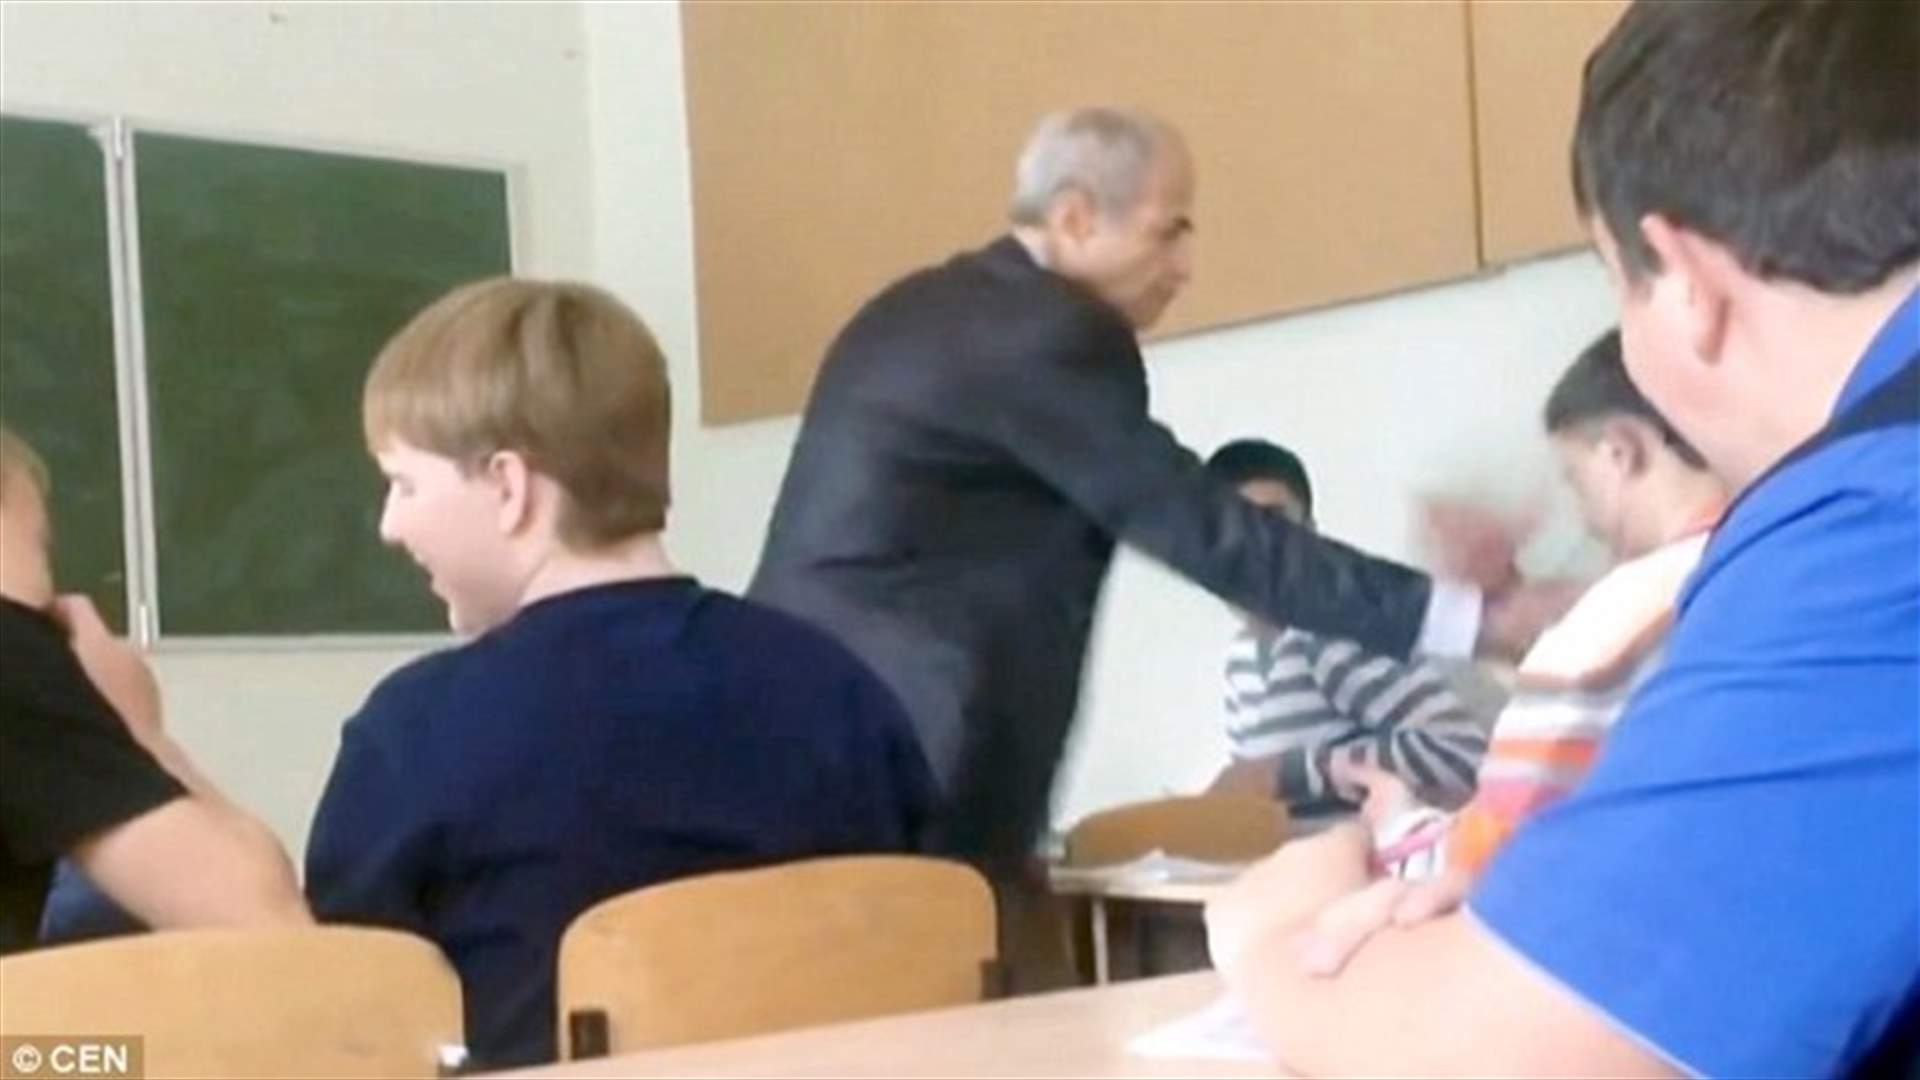 بالفيديو: تلميذ يعتدي على معلمه بالضرب... فكيف تصرّف الطلاب؟